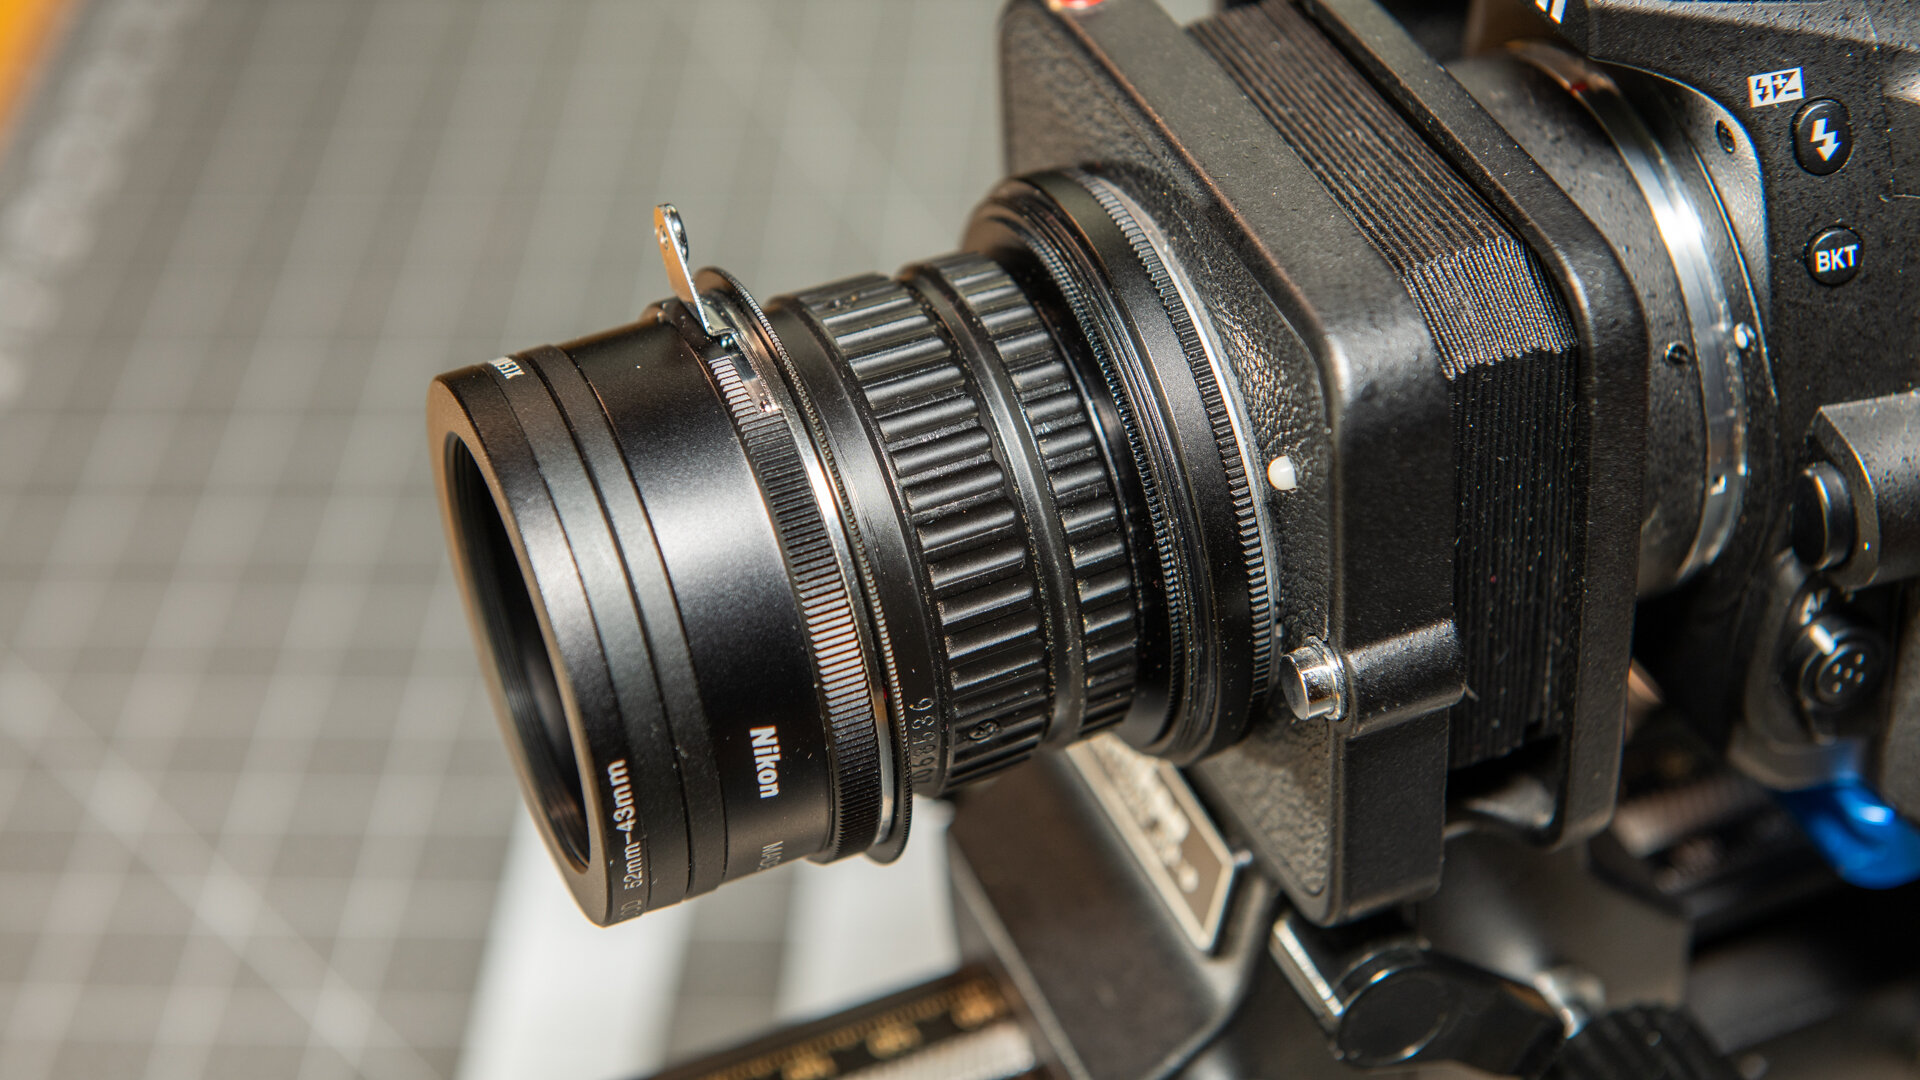 Sturdy Make a name Rudely El Nikkor 50mm f/2.8N Enlarger Lens — Allan Walls Photography